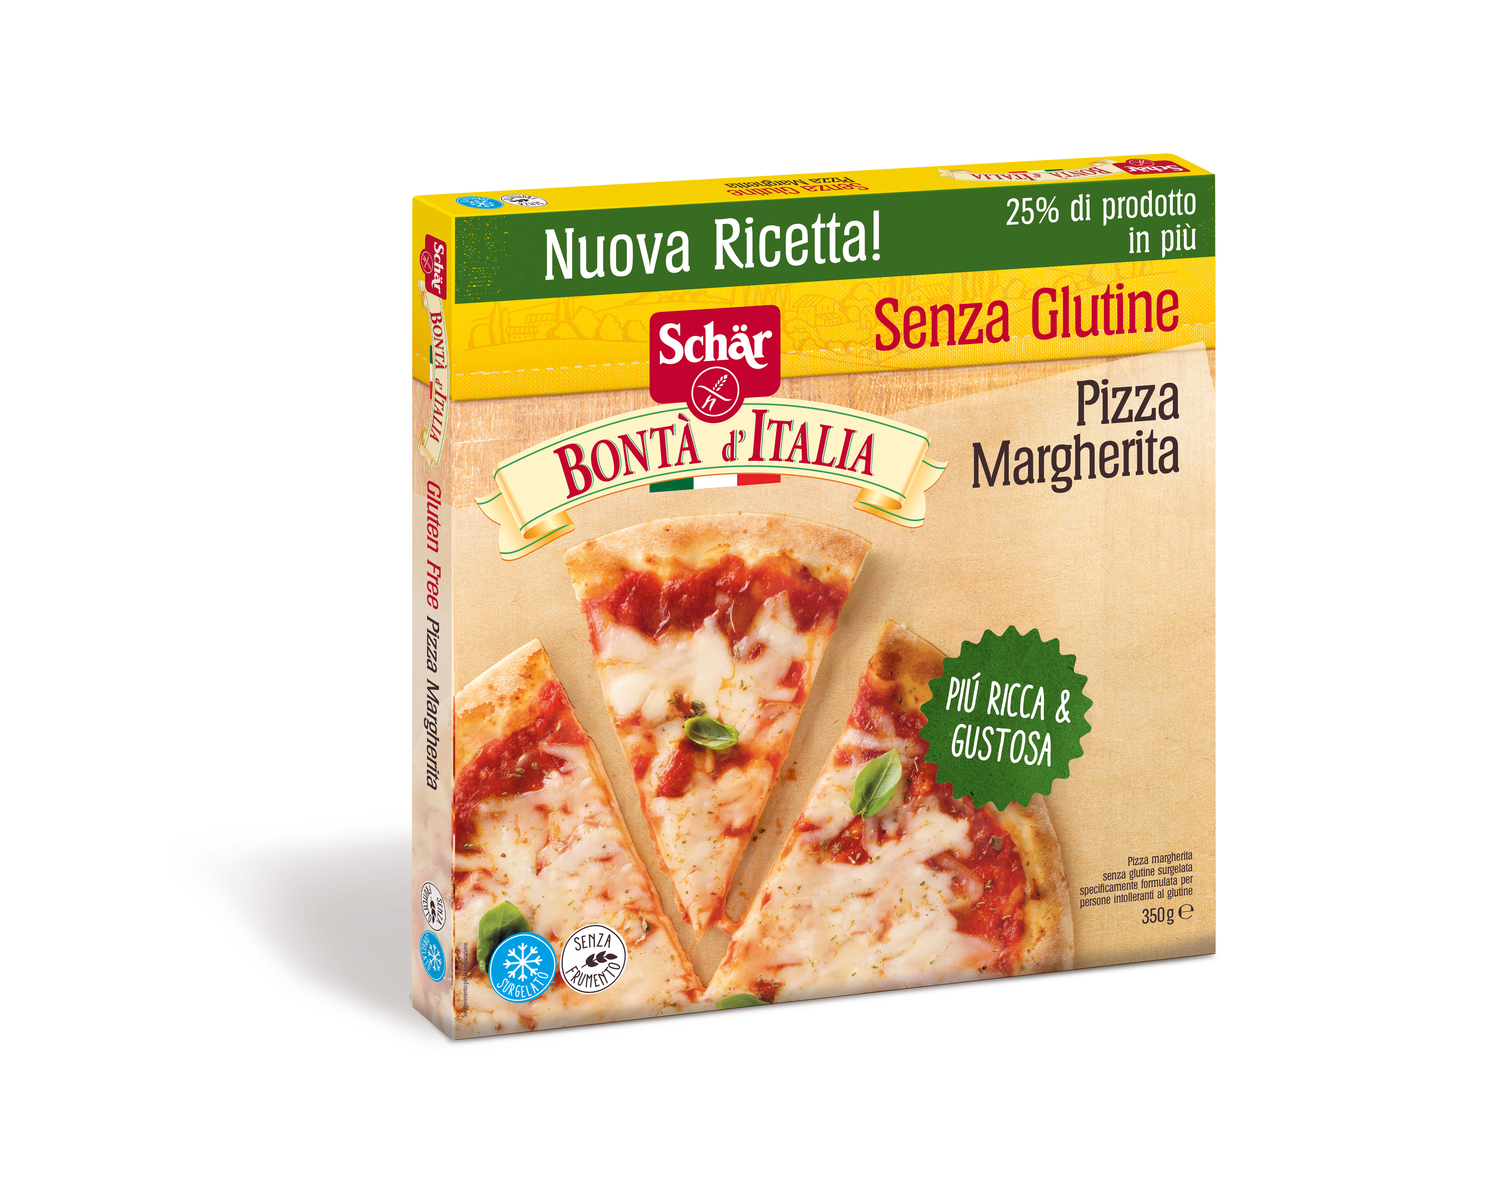 Schär rinnova le Pizze Bontà d’Italia: il gusto della qualità senza glutine